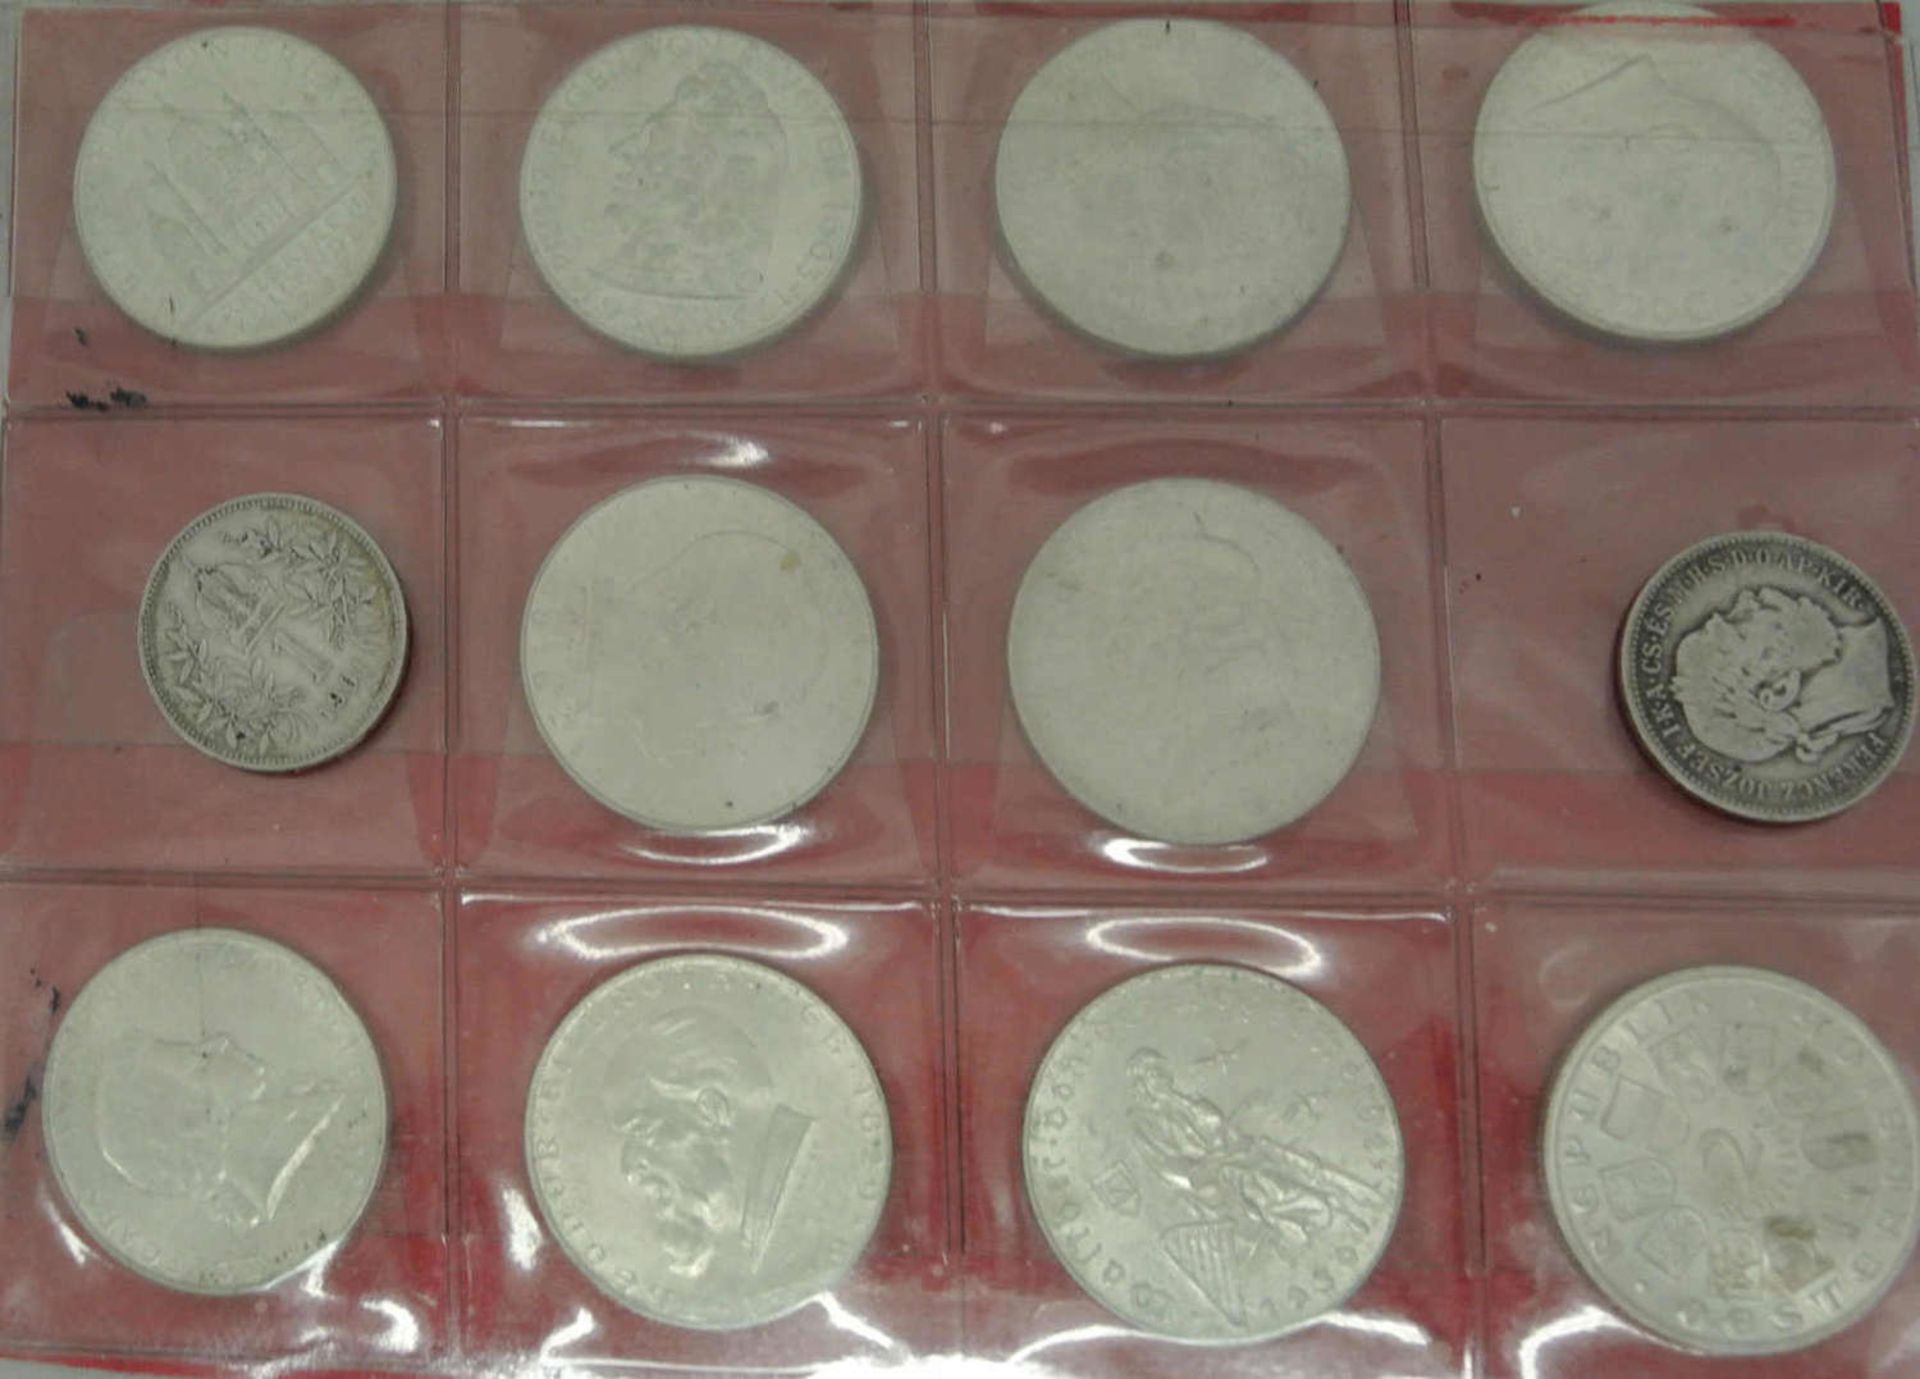 Lot Österreich Münzen, 1928/1937, alle 2 Schilling Münzen in Silber. Komplett inkl. HAYDEN